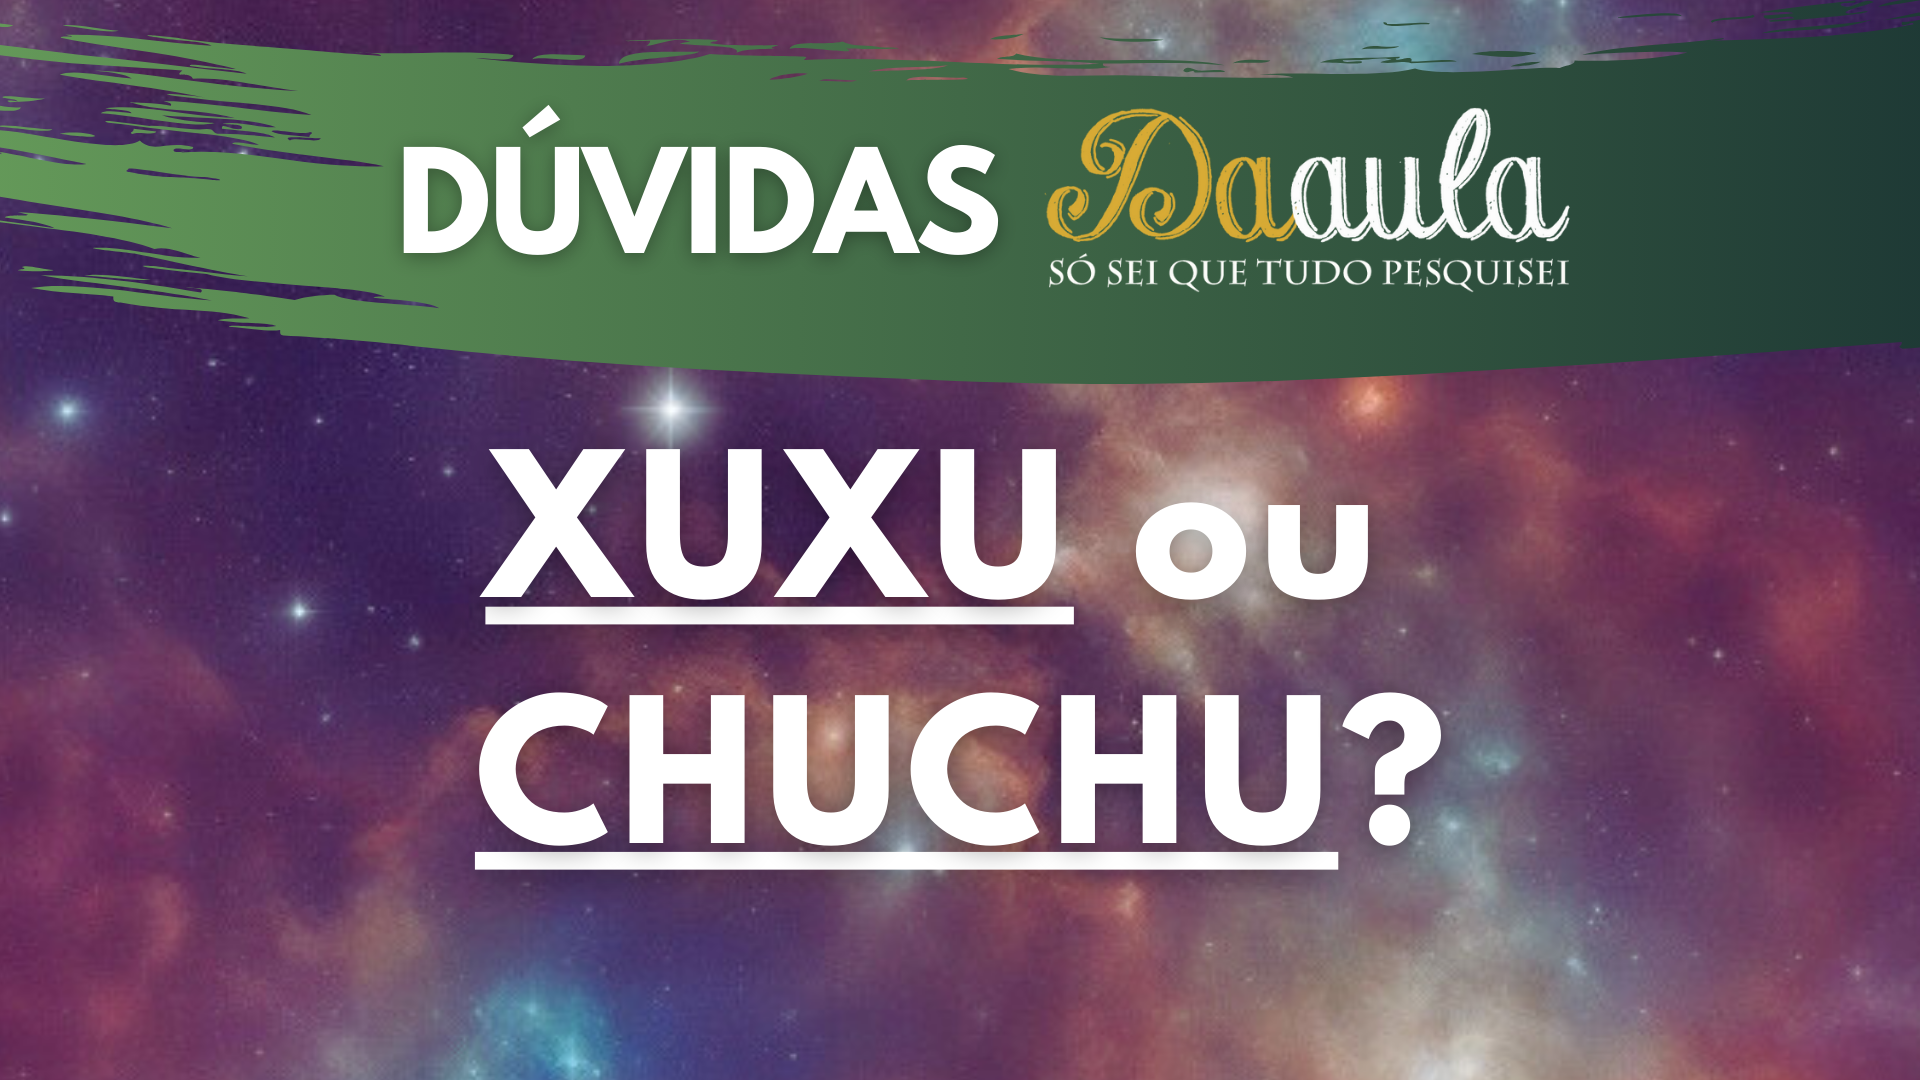 Qual a Forma Correta: Xuxu ou Chuchu?